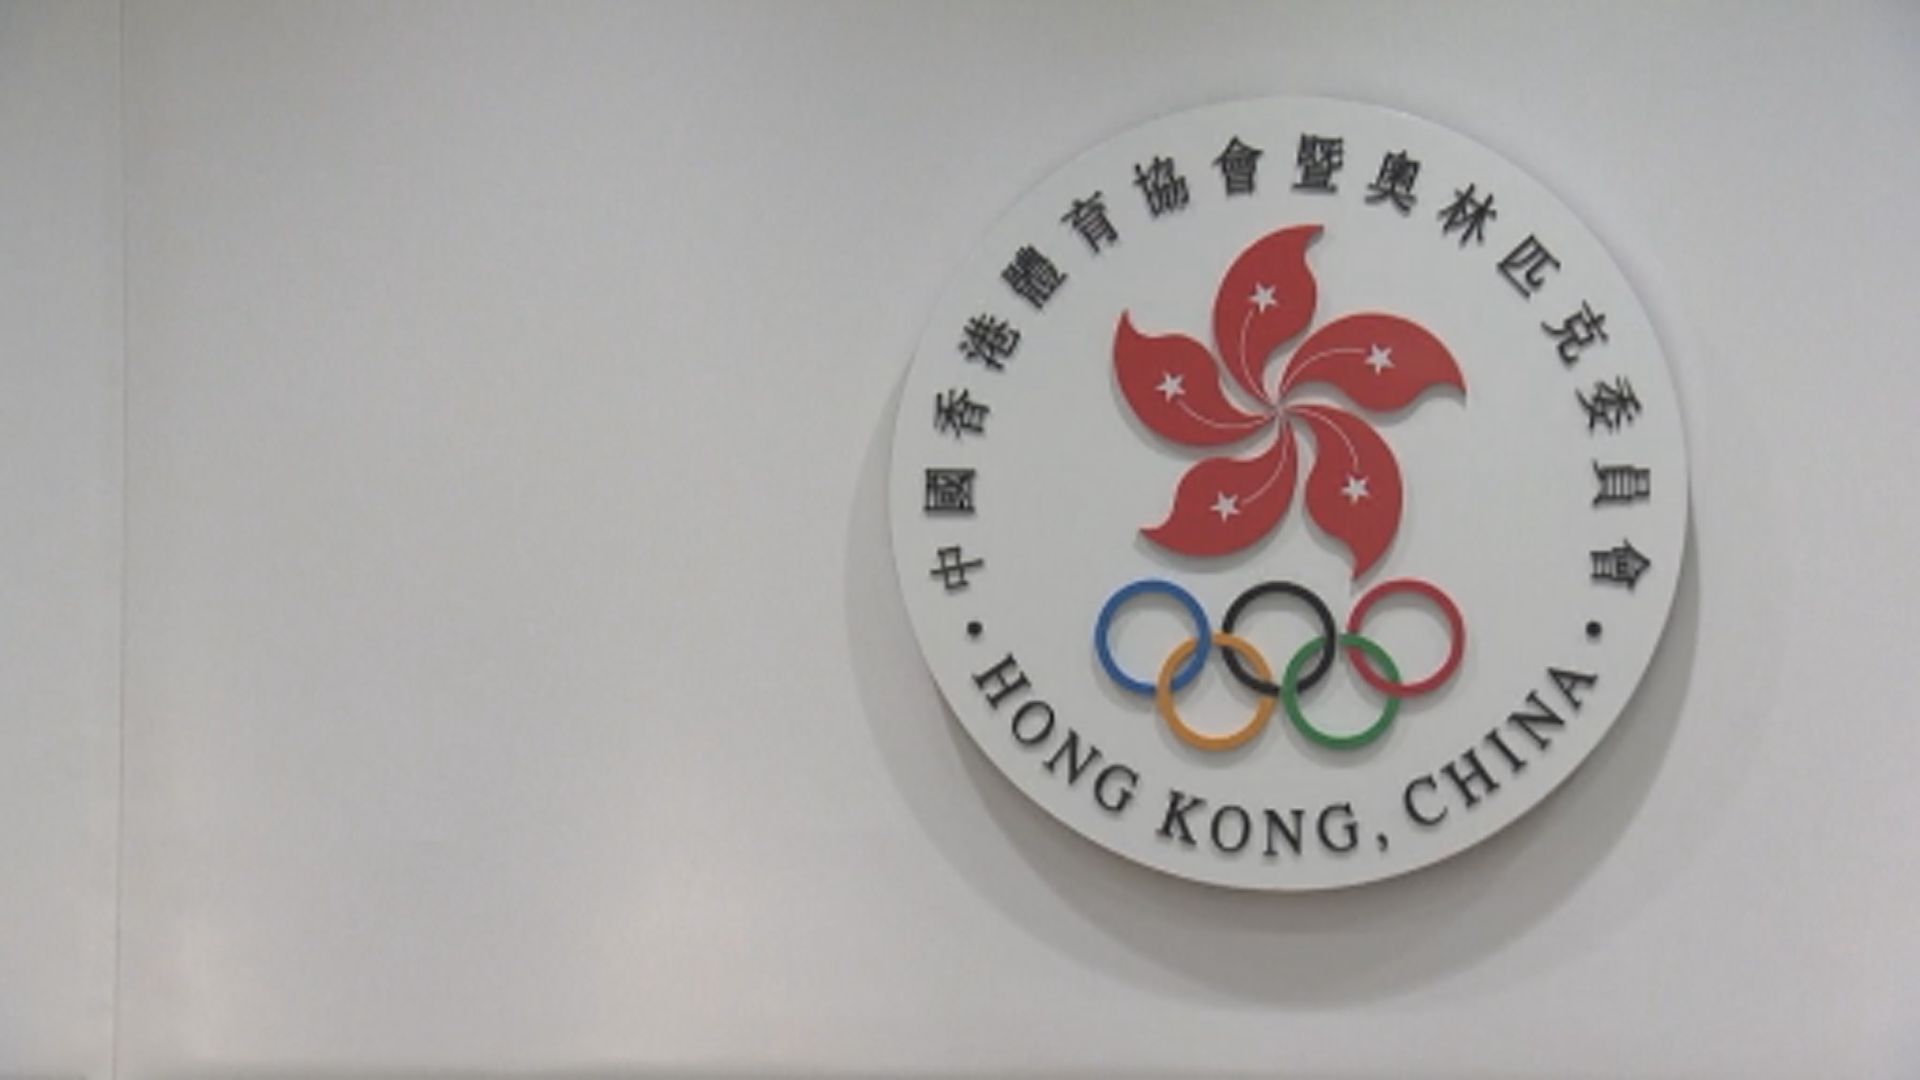 港協暨奧委會要求旗下總會名稱加上「中國香港」